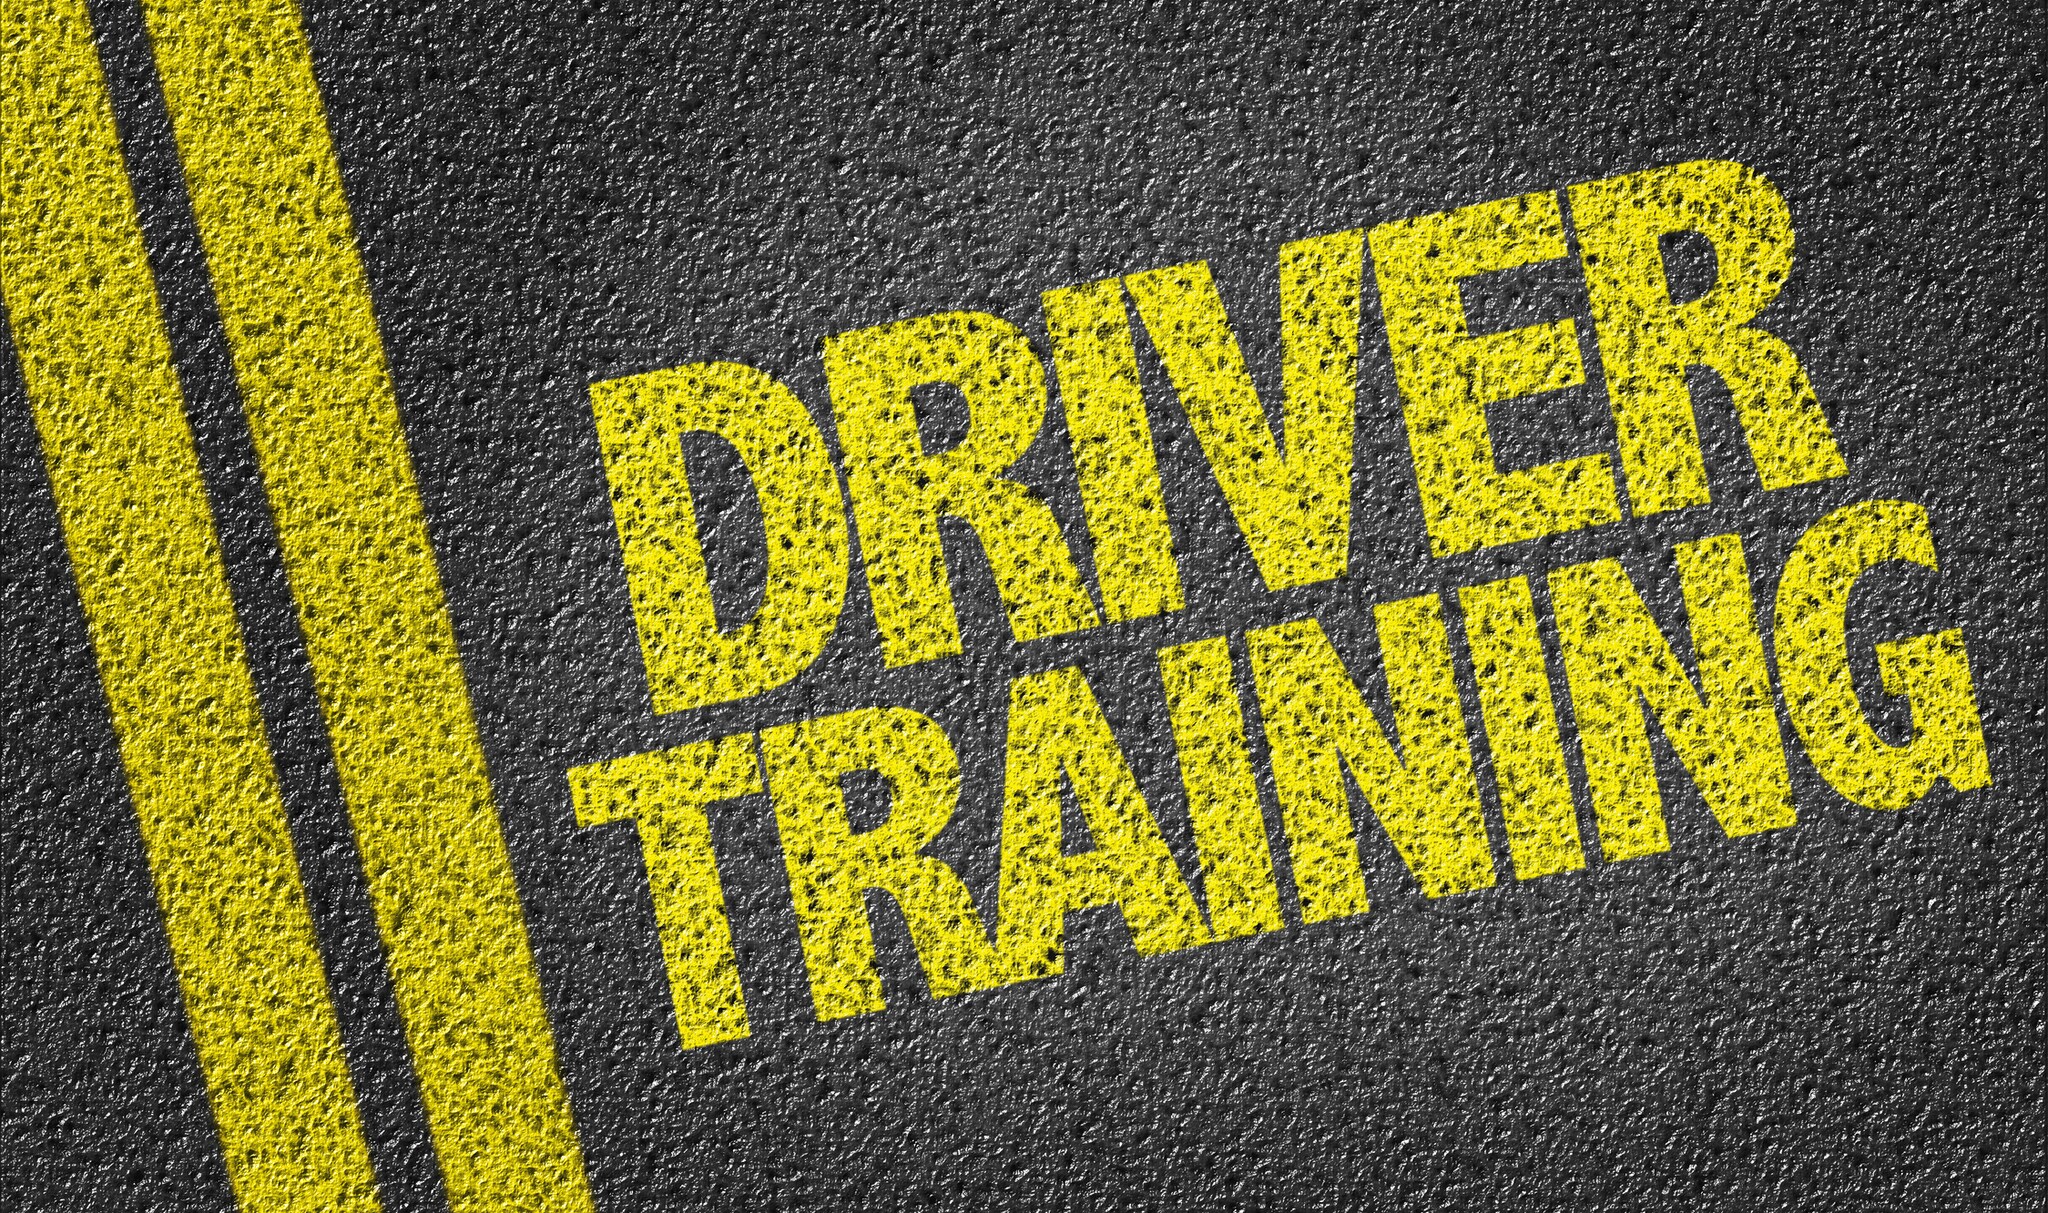 Driver Training painted on asphalt road